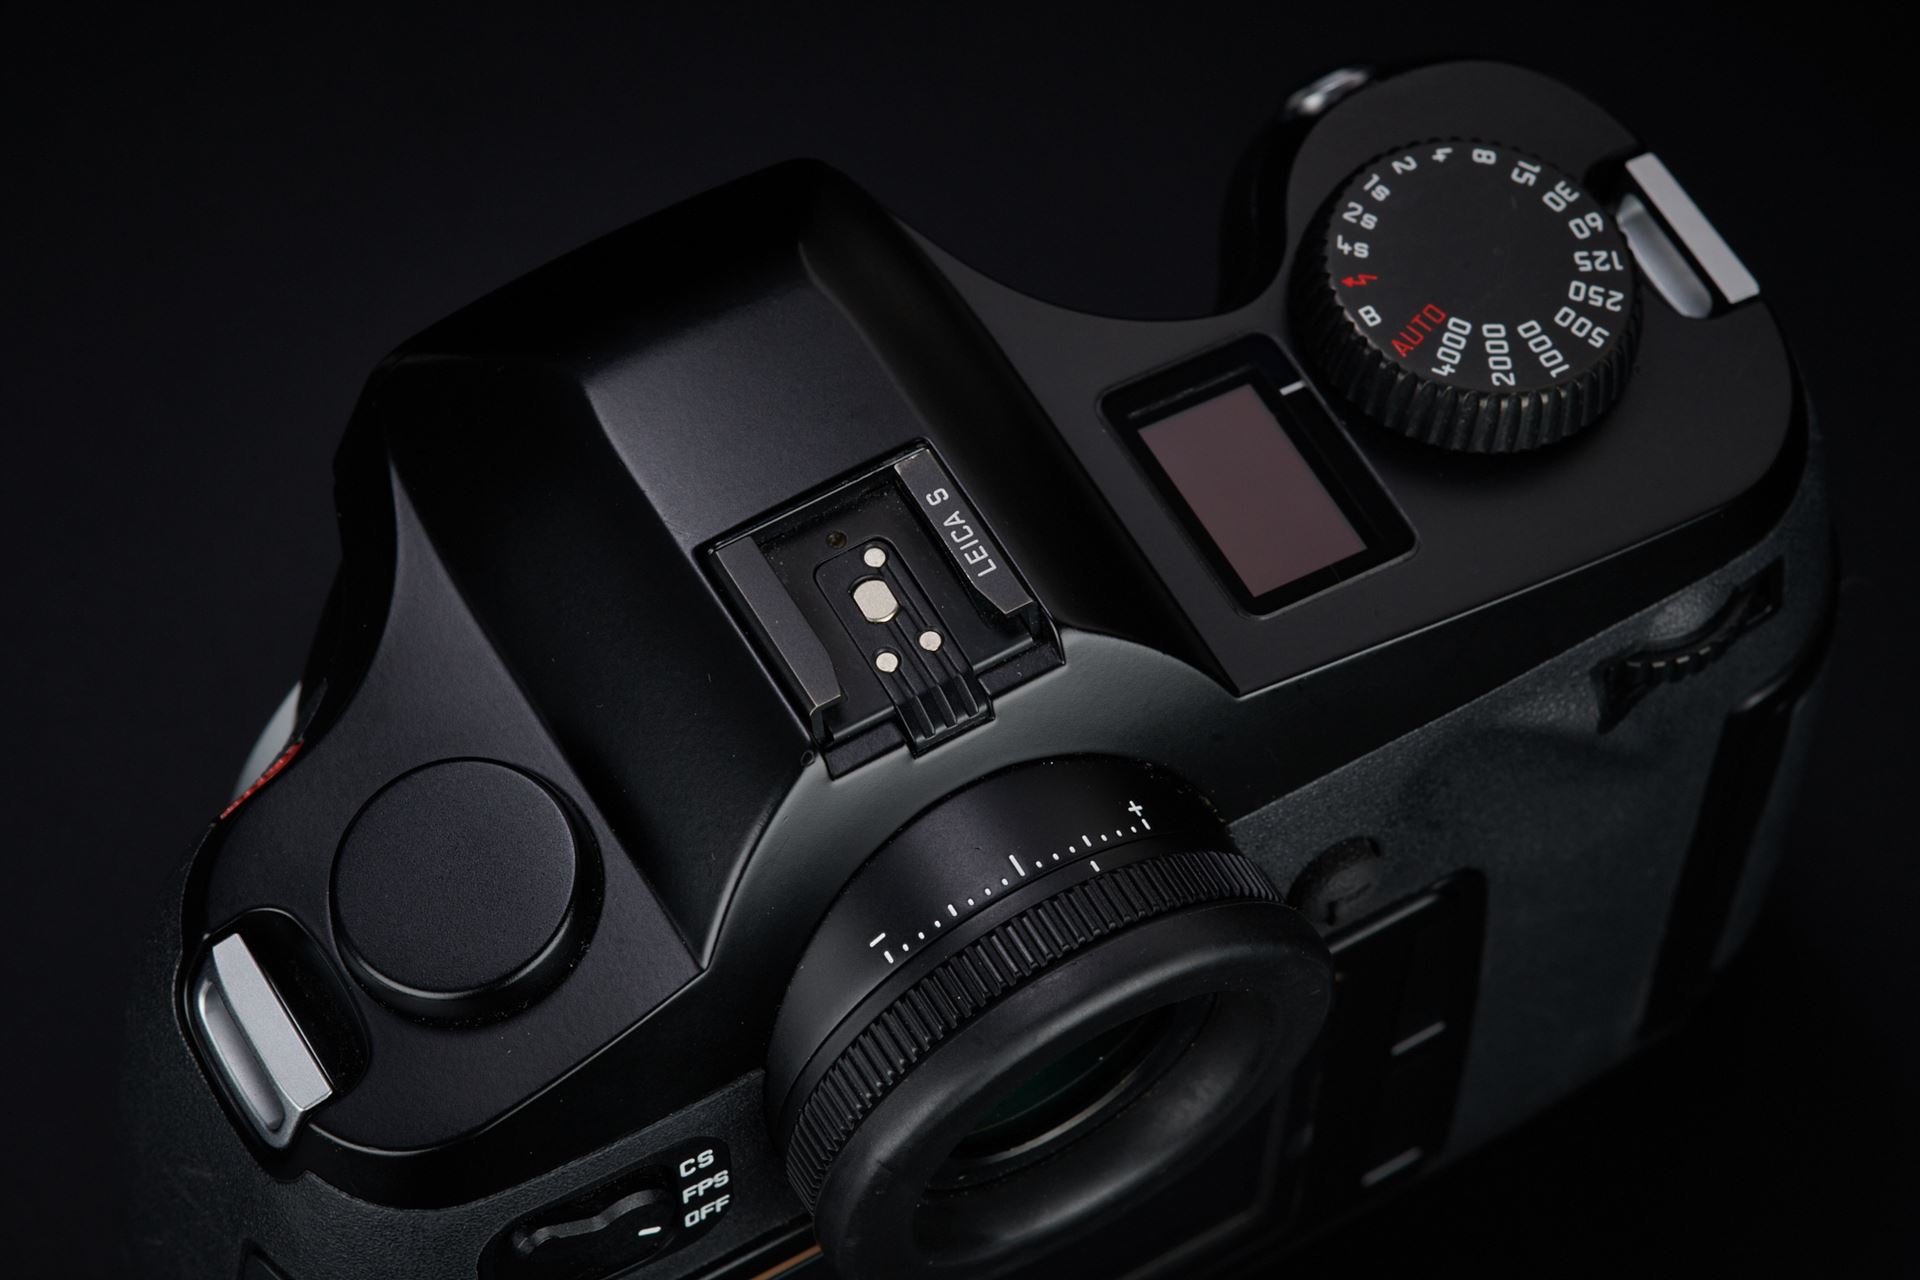 Picture of Leica S (Typ 006) w/ Leica Elmarit-S 30mm f/2.8 Asph. CS, Leica Summicron-S 100mm f/2 Asph., and Leica APO-Elmar-S 180mm f/3.5 CS